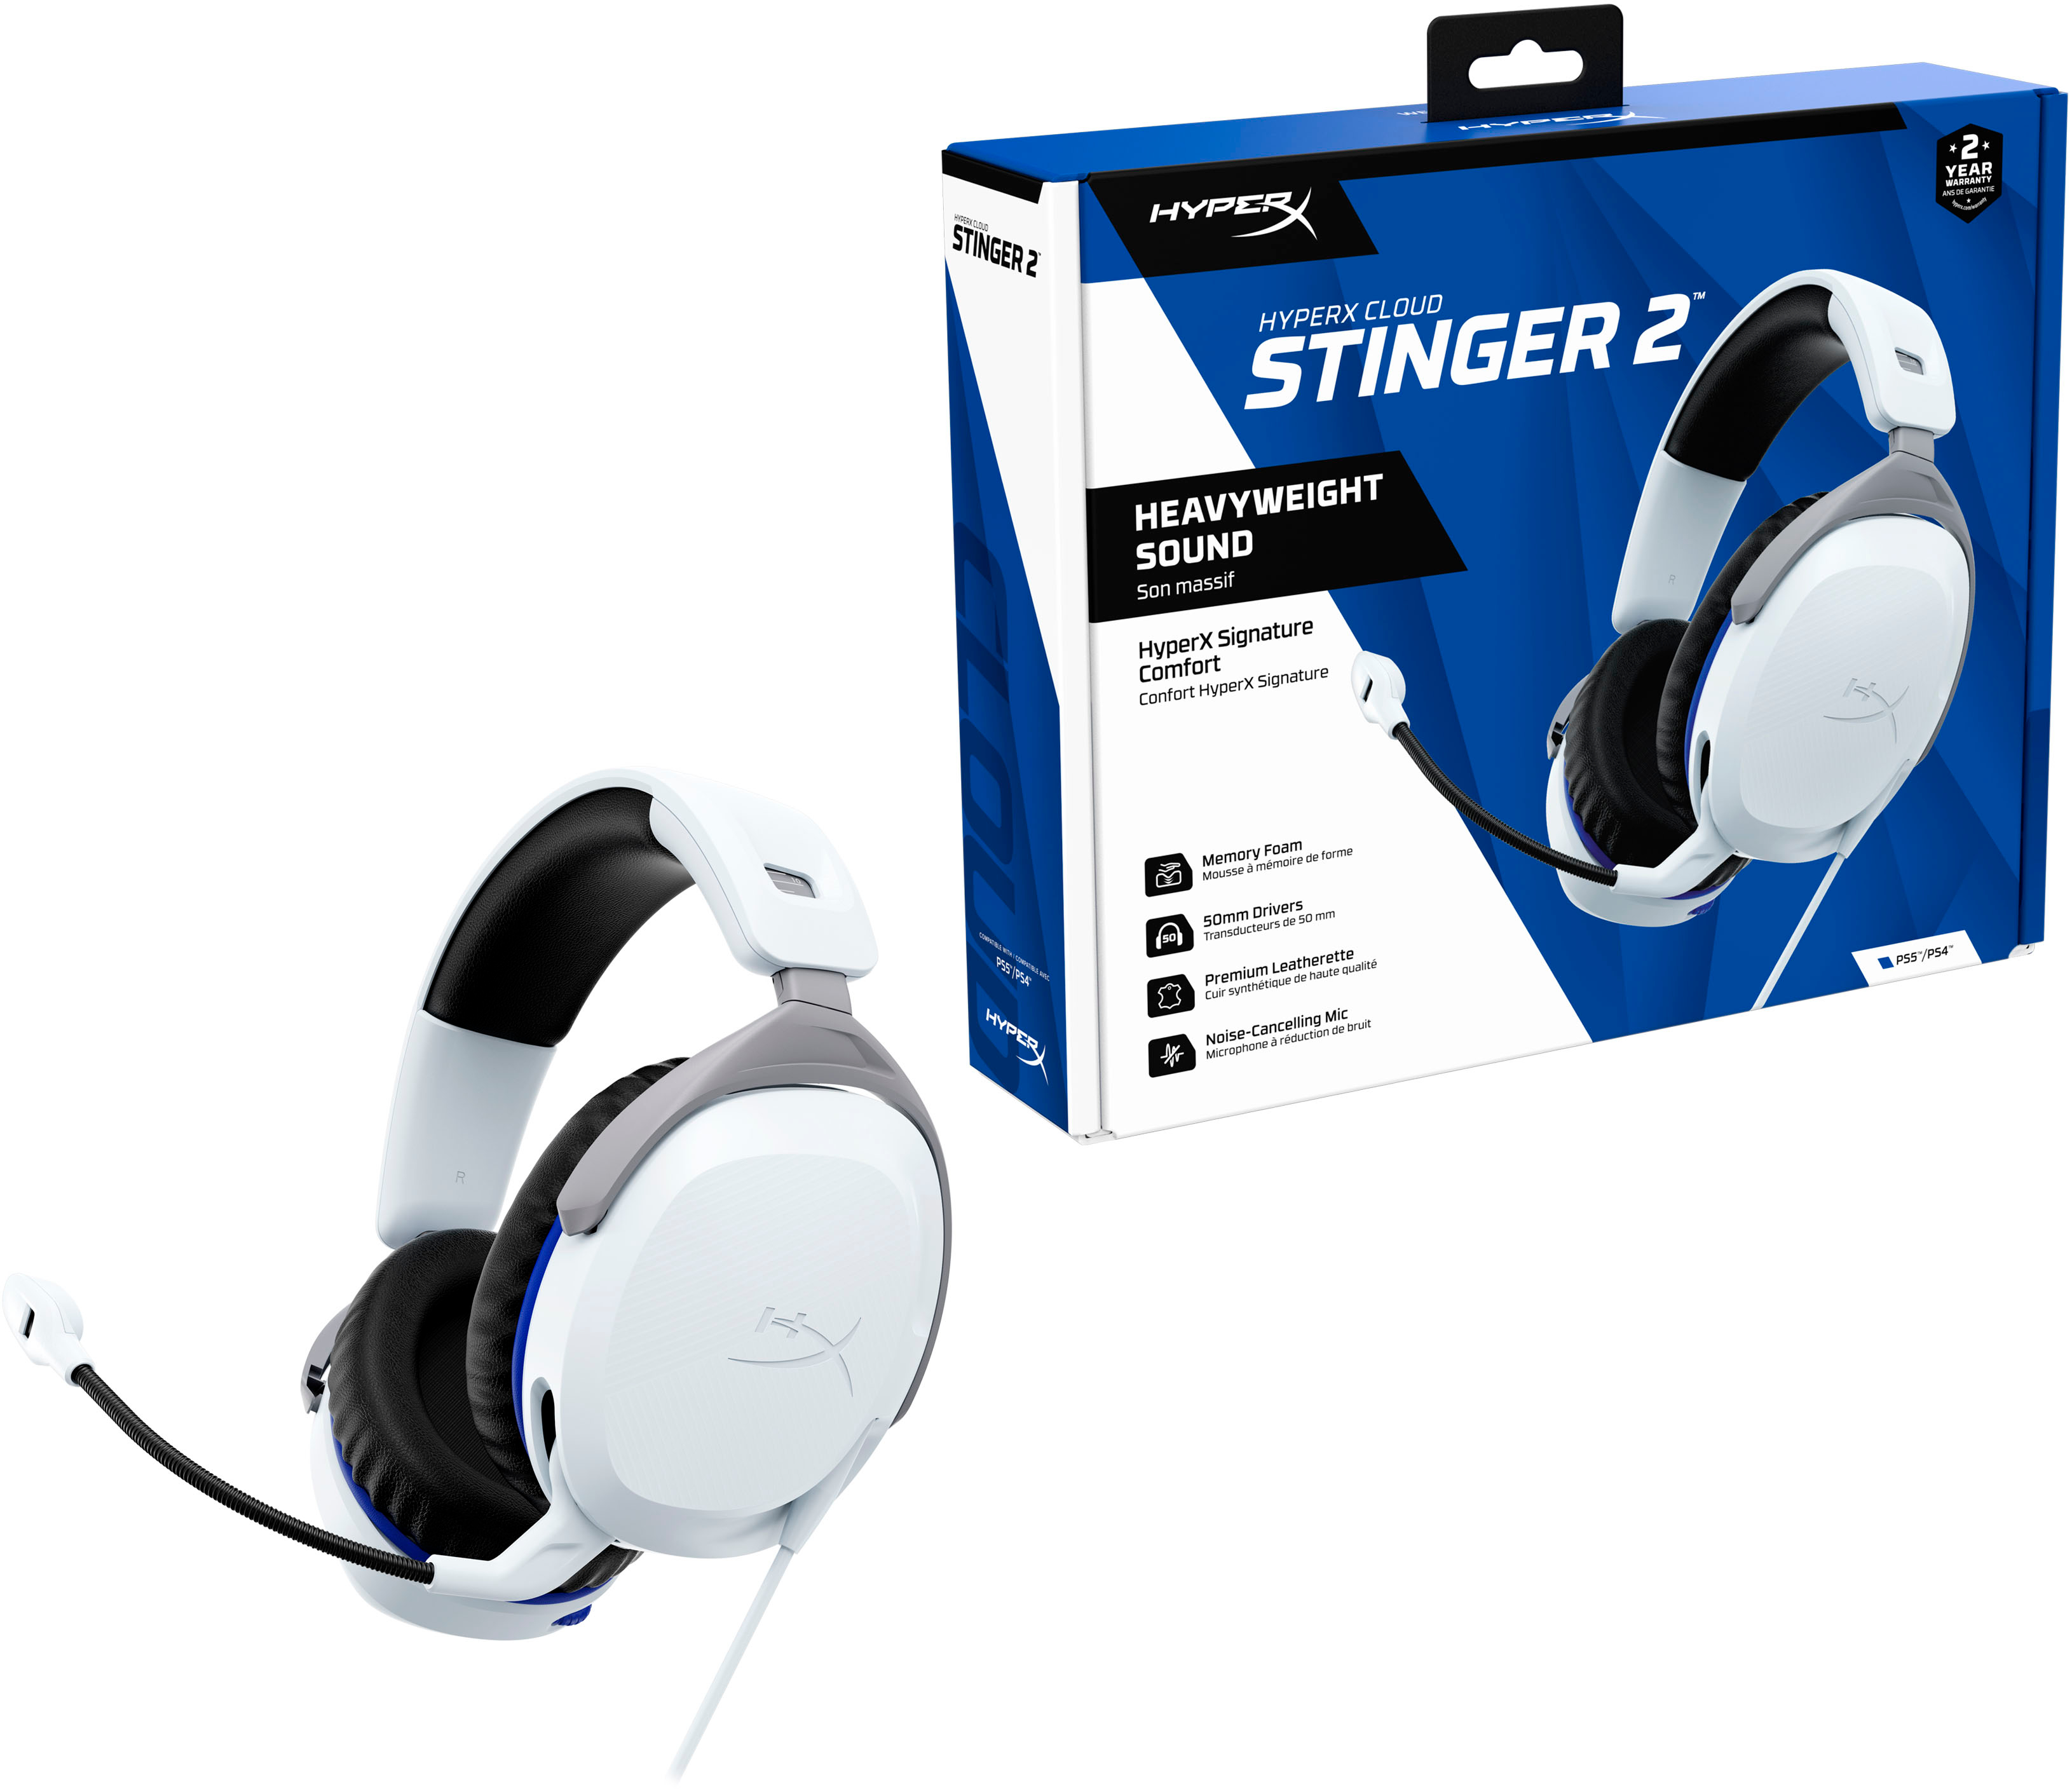 HyperX Cloud Stinger 2 Gaming Headset Review: Still a Good Deal - CNET